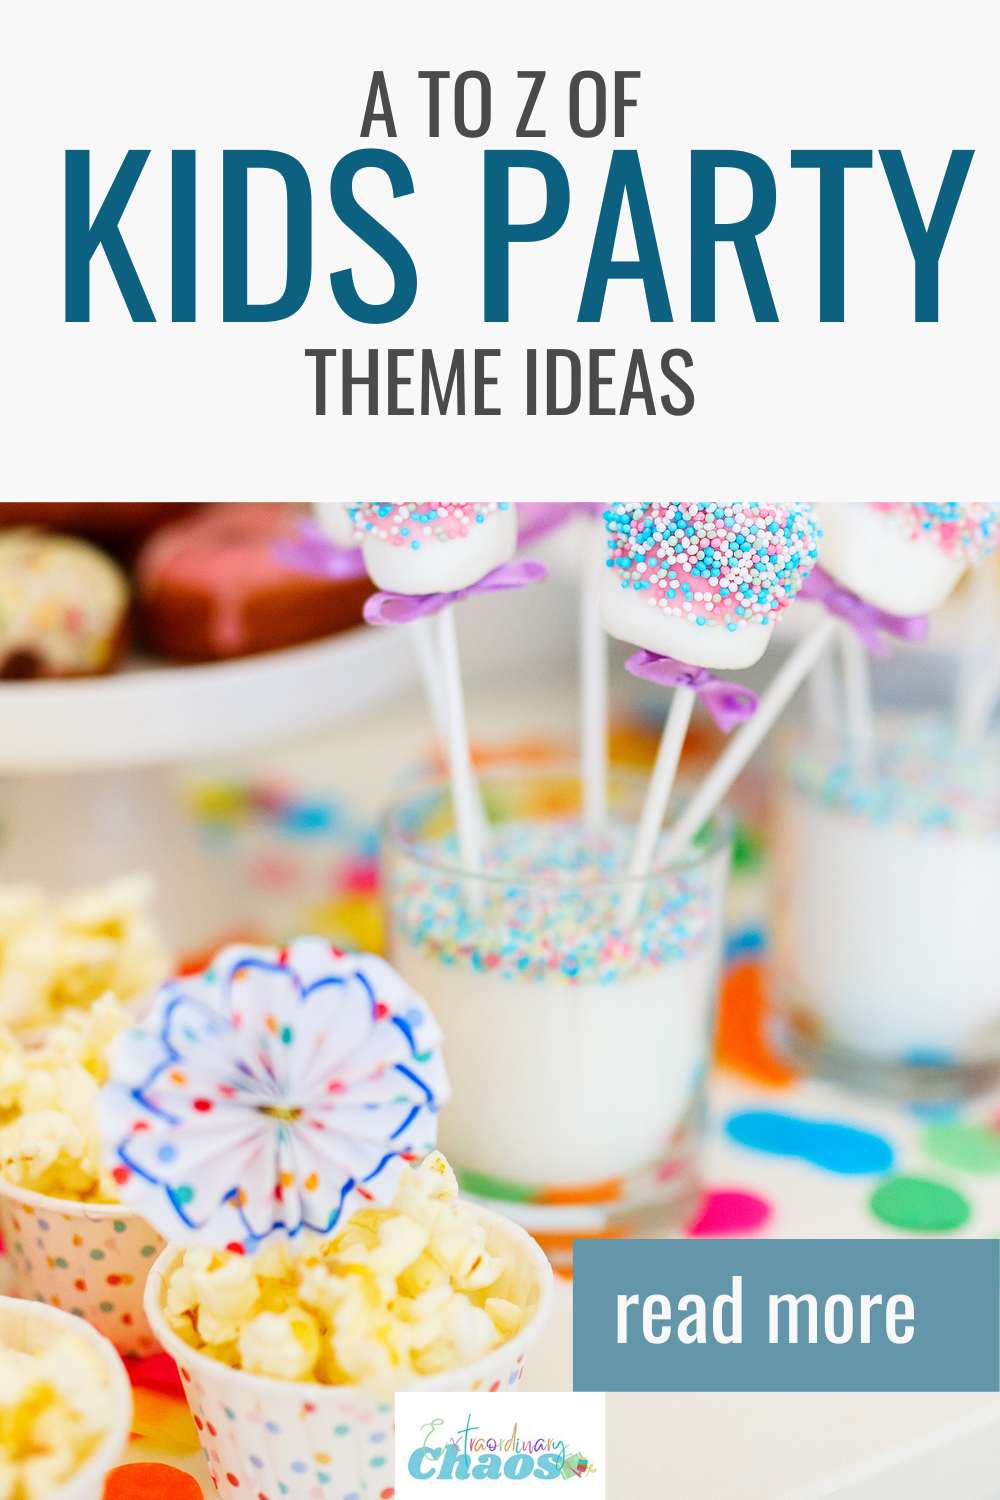 Kids party theme ideas-